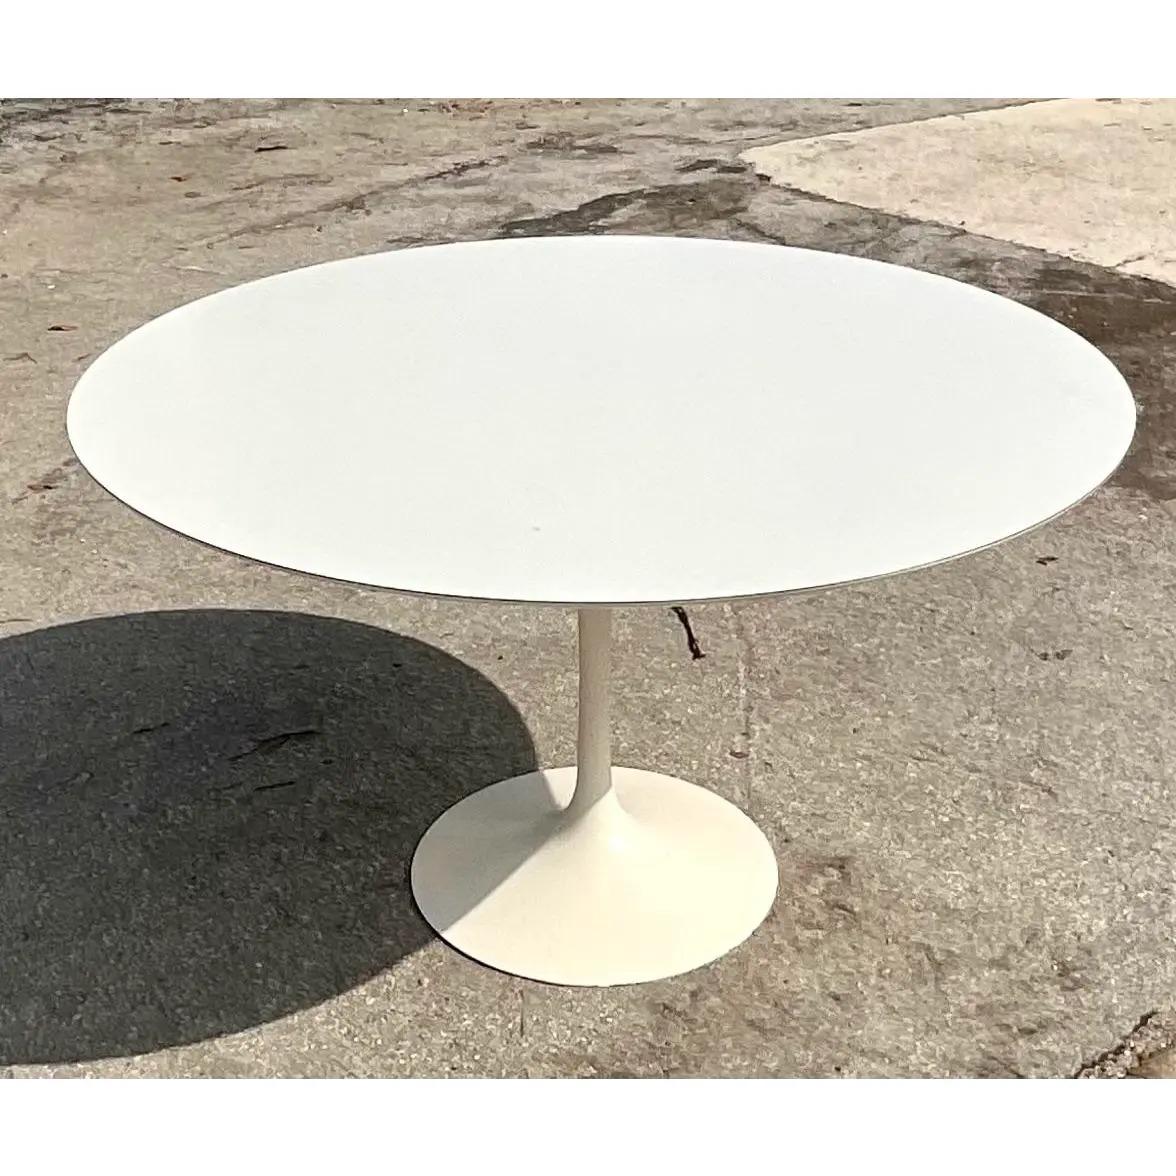 20th Century Midcentury Eero Saarinen for Knoll Round Dining Table